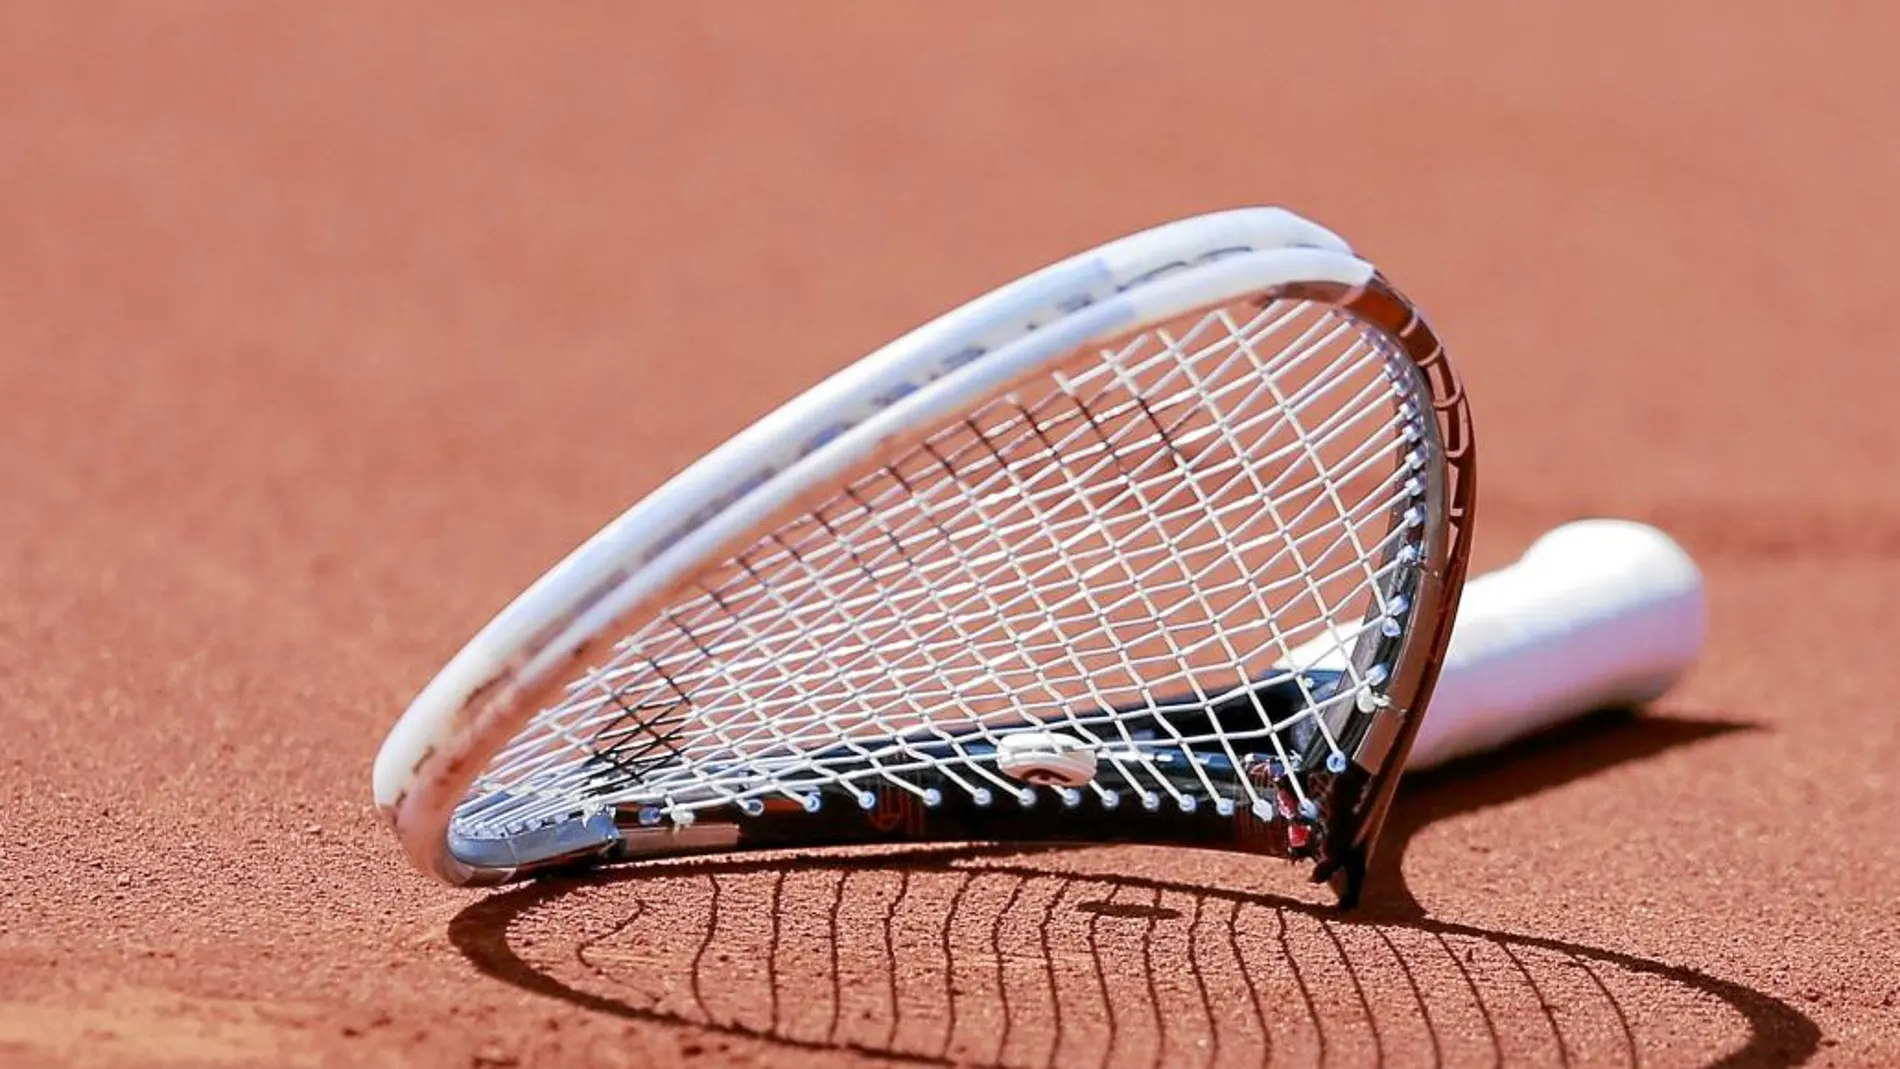 La Guardia Civil detiene a 34 personas por comprar partidos de tenis